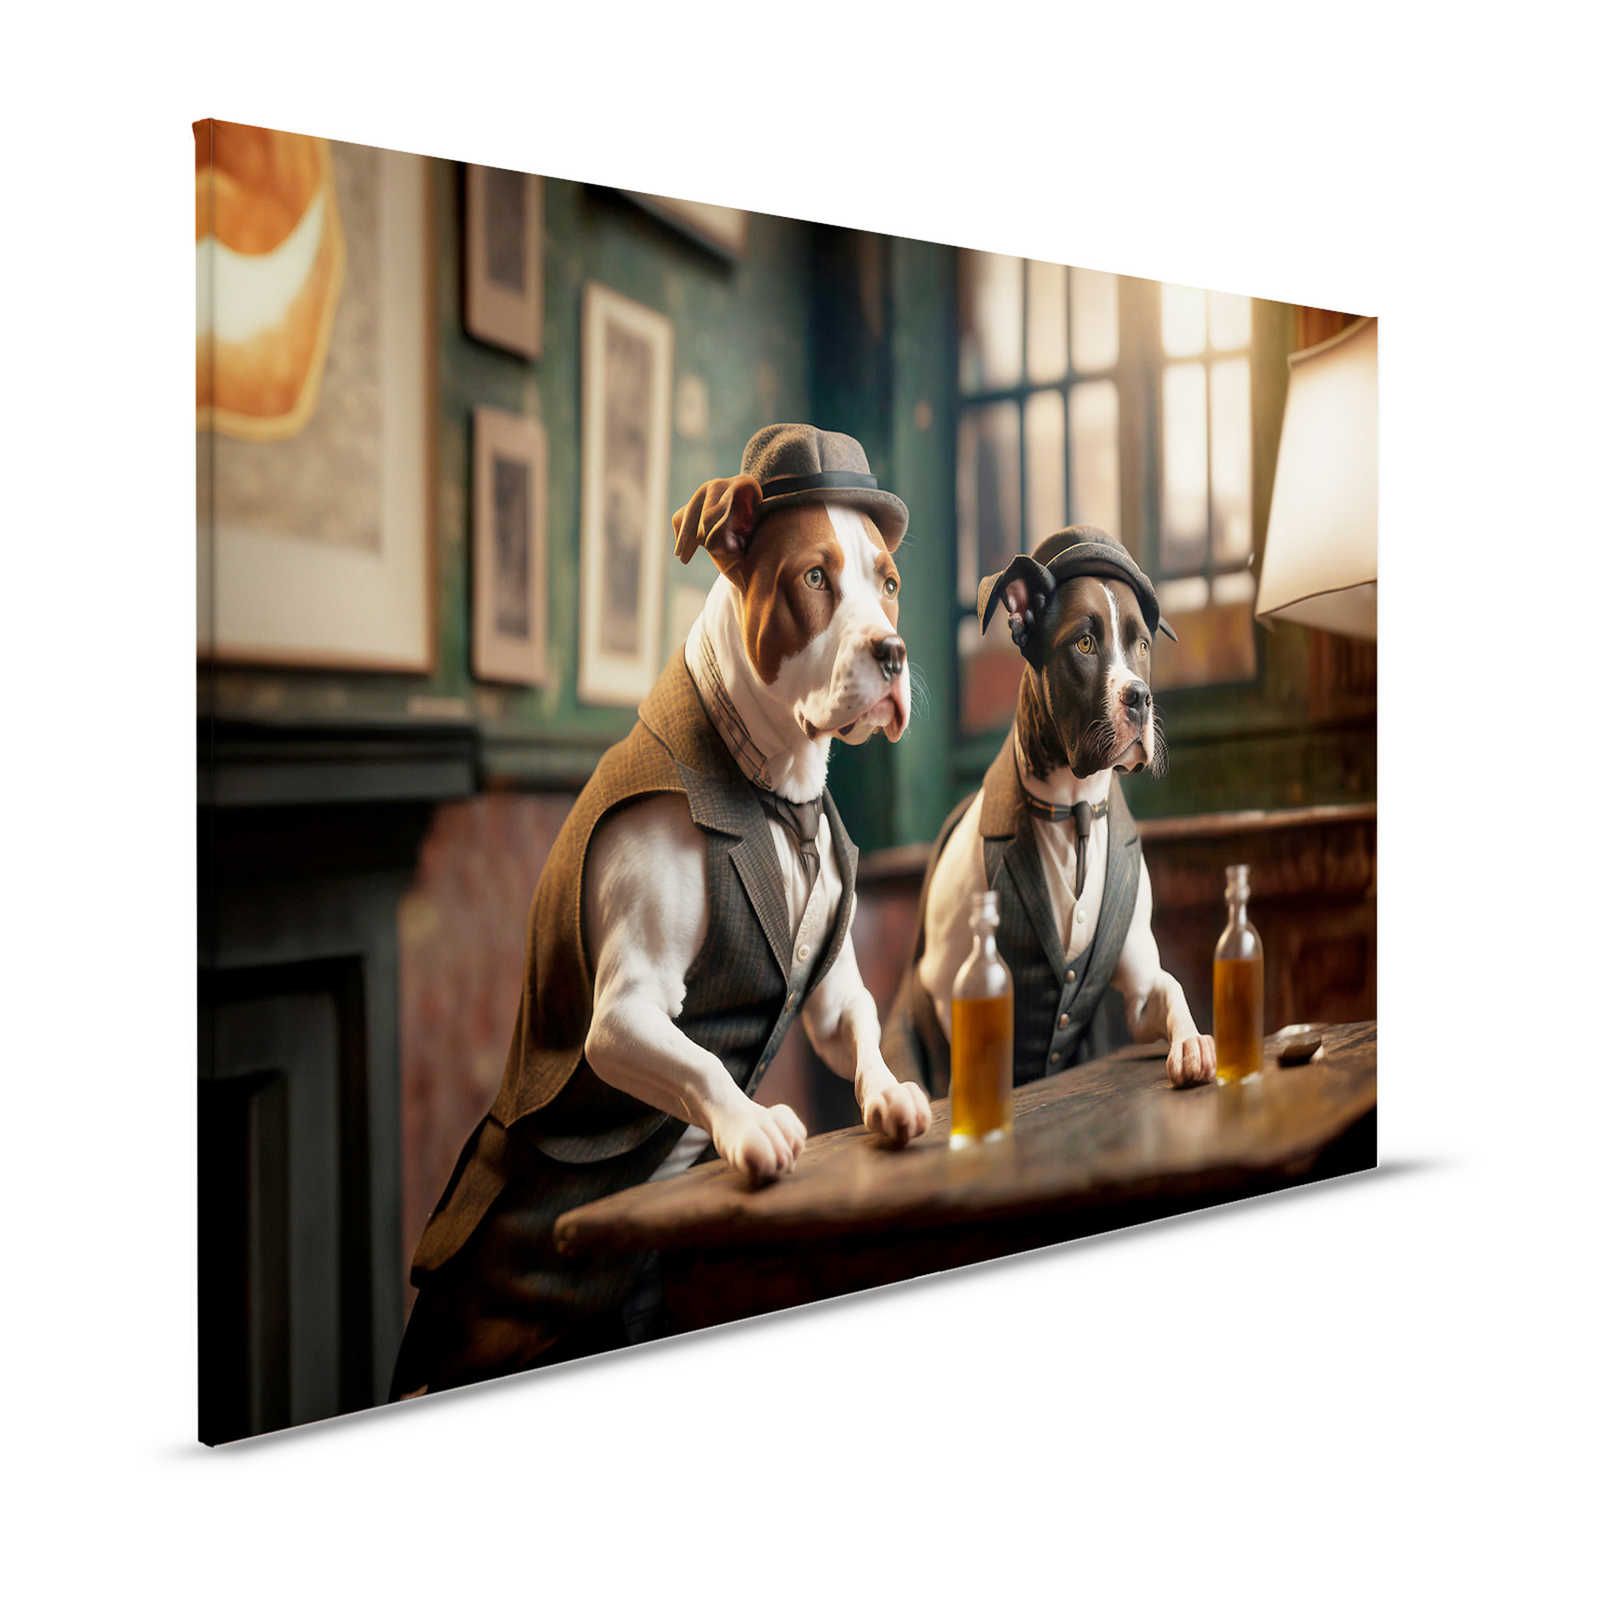 KI Canvas painting »Doggy Bar 2« - 120 cm x 80 cm
